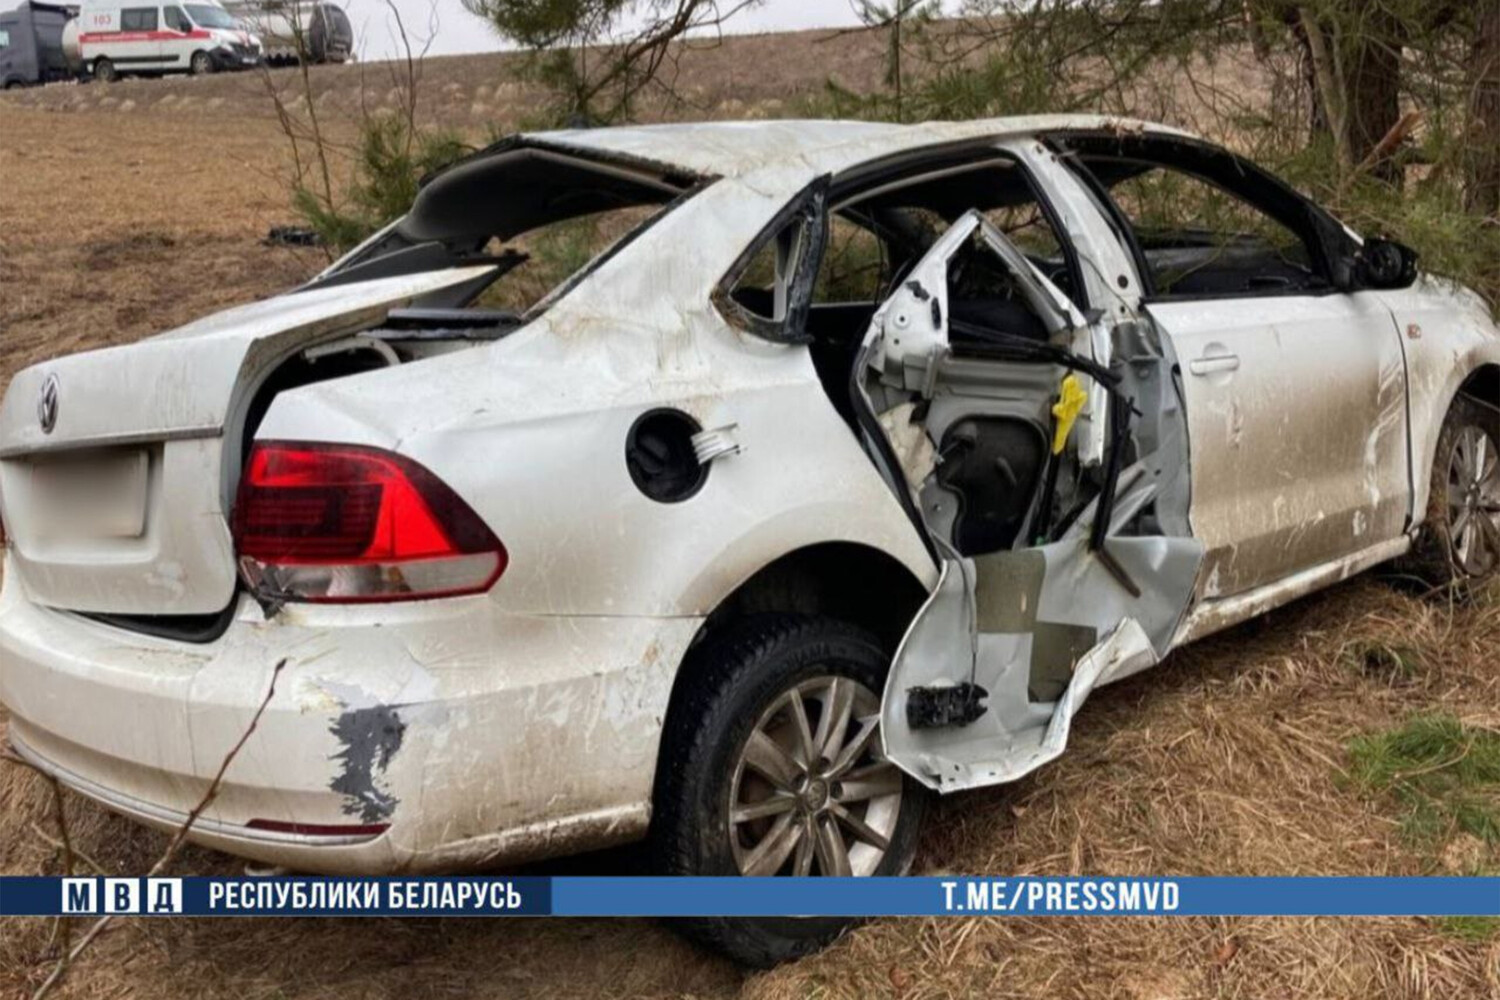 Автомойщик угнал сданный на химчистку Volkswagen Polo и погиб в ДТП